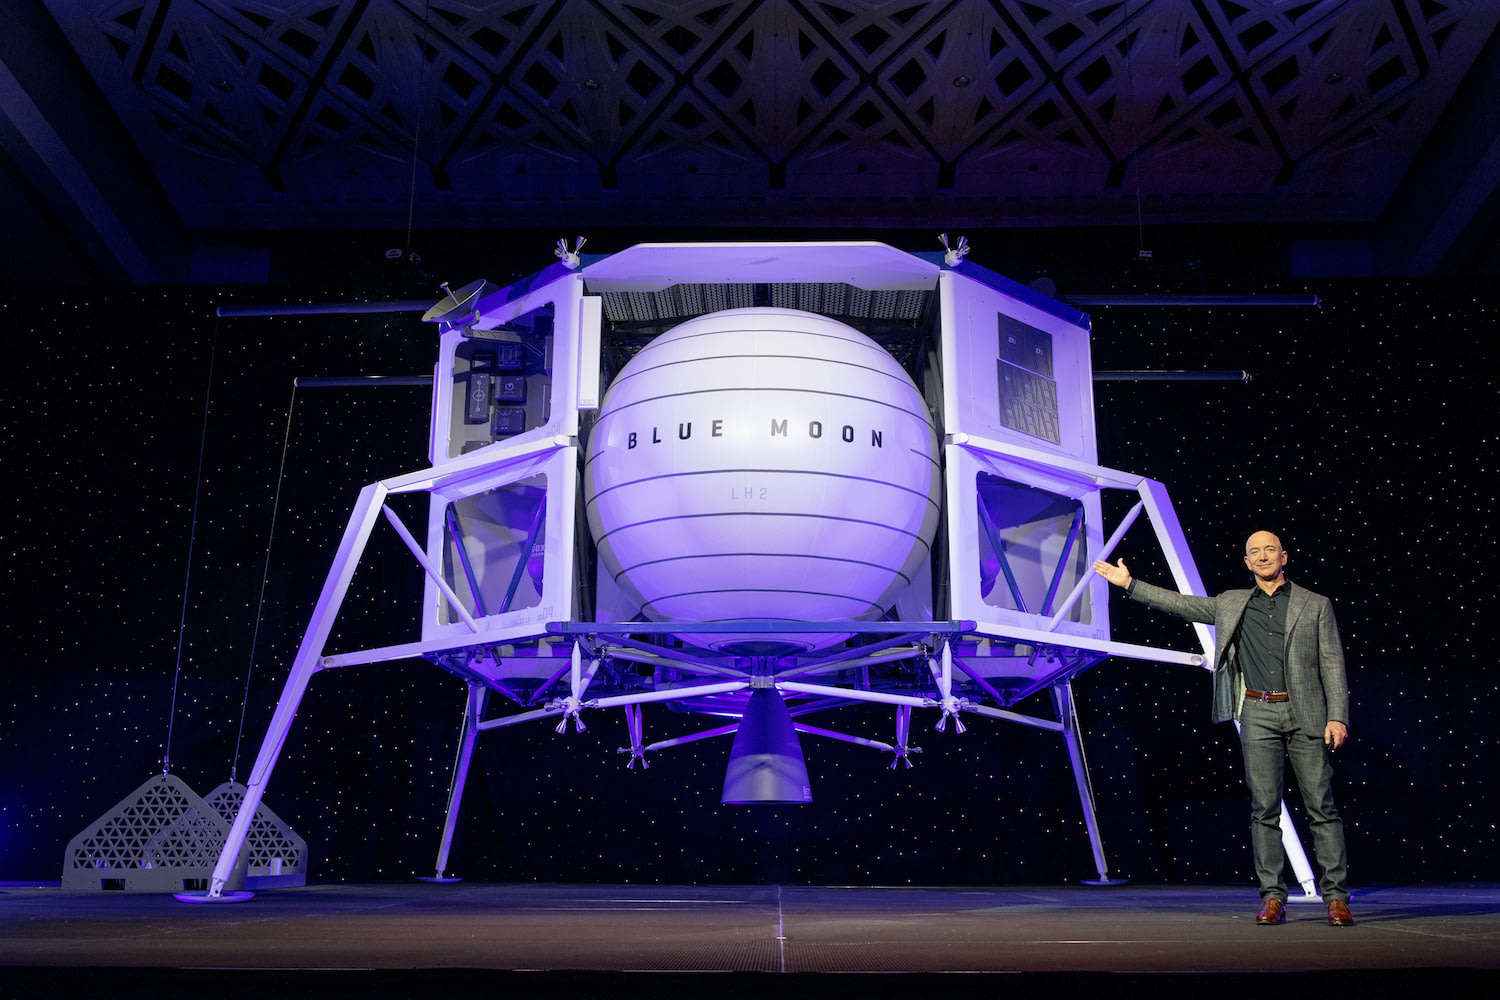 Джефф Безос представив апарат для космічних польотів на Місяць (фото)